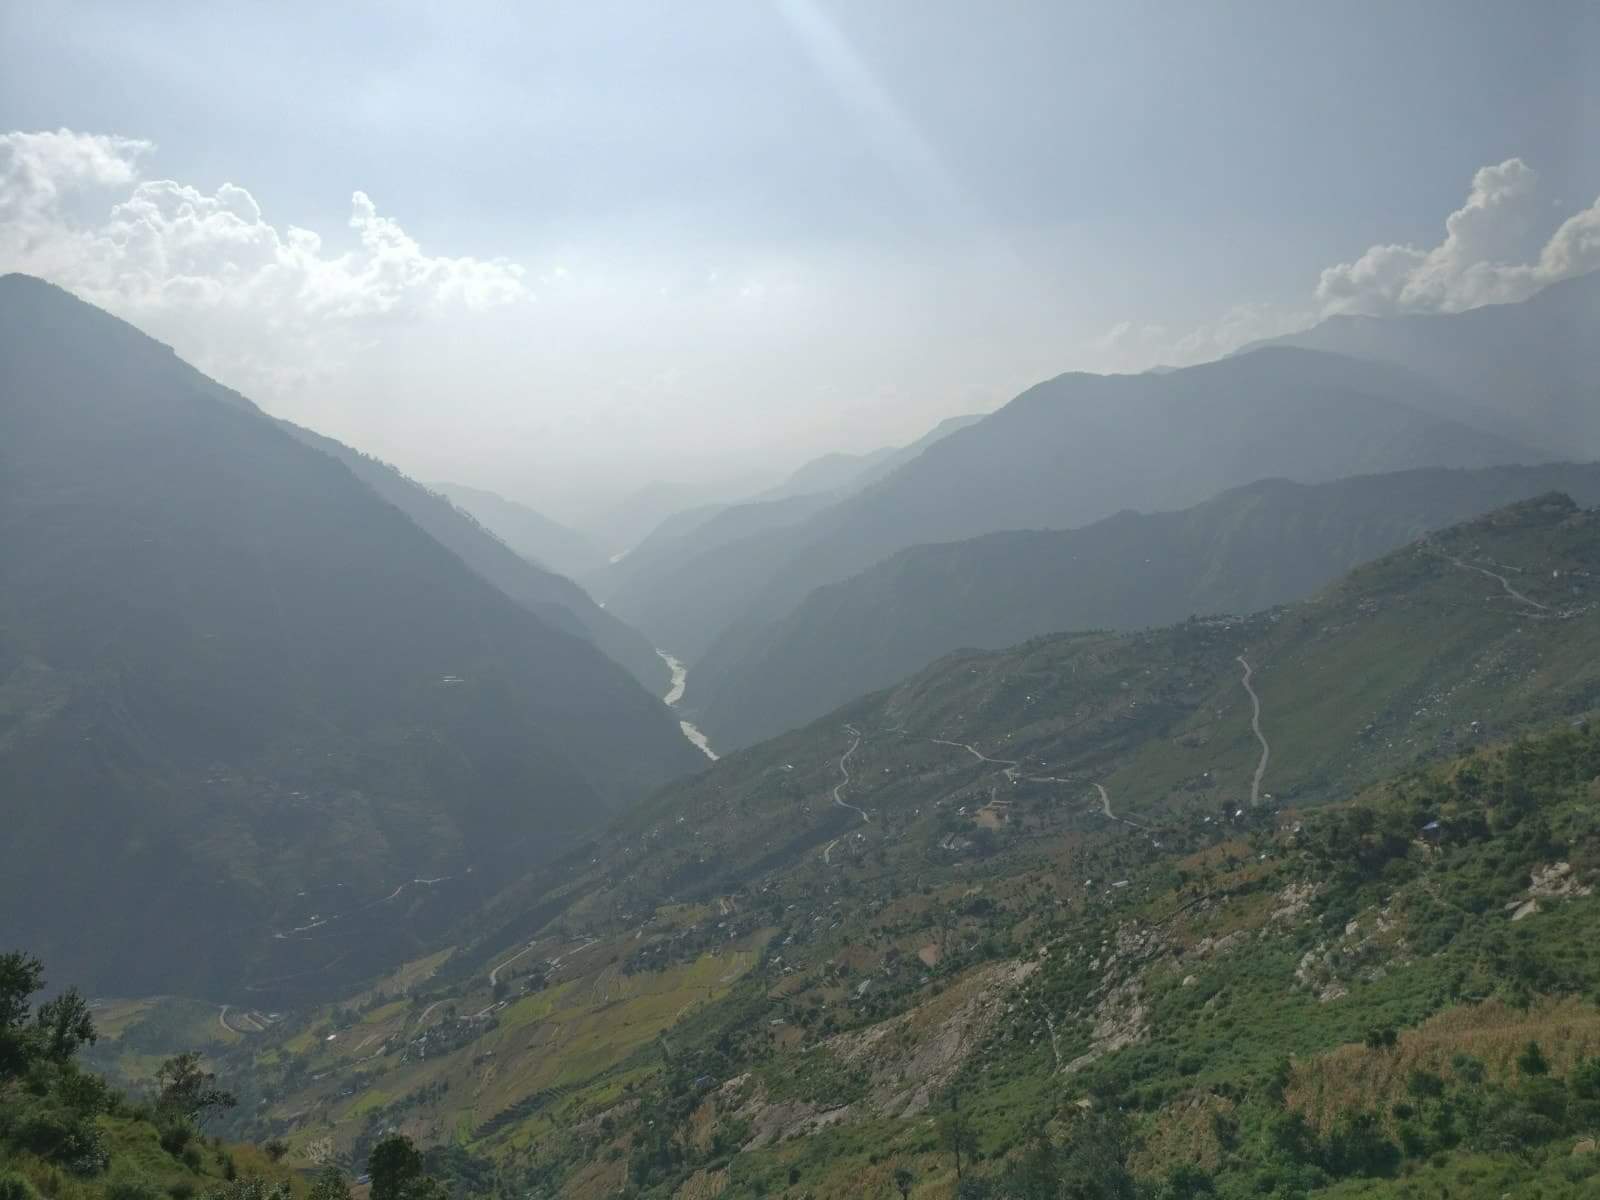 Maanma Bajar, Kalikot